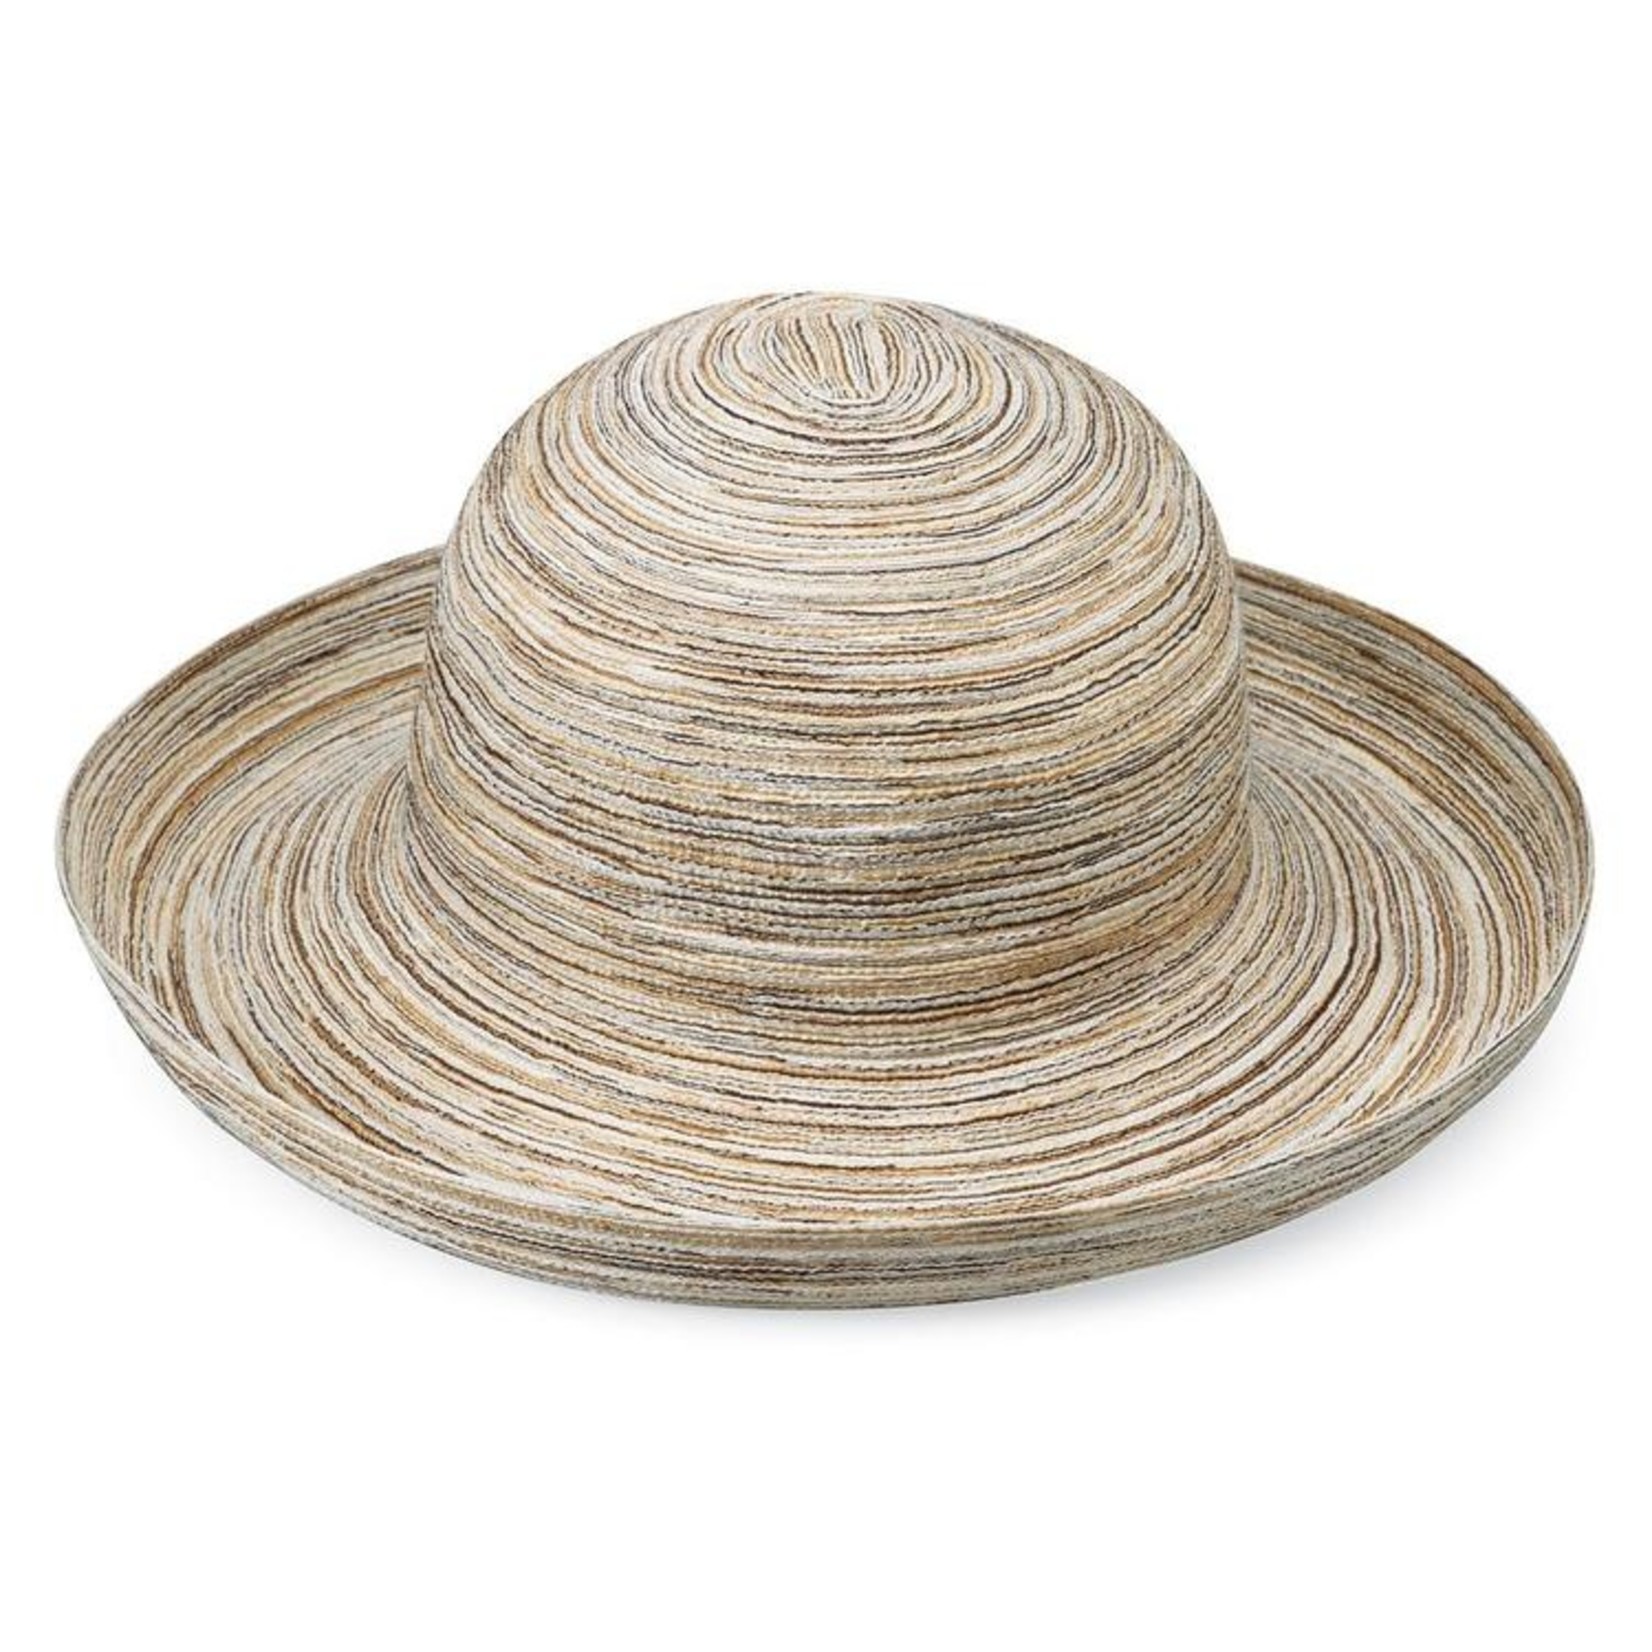 Wallaroo Woven Sun Hat